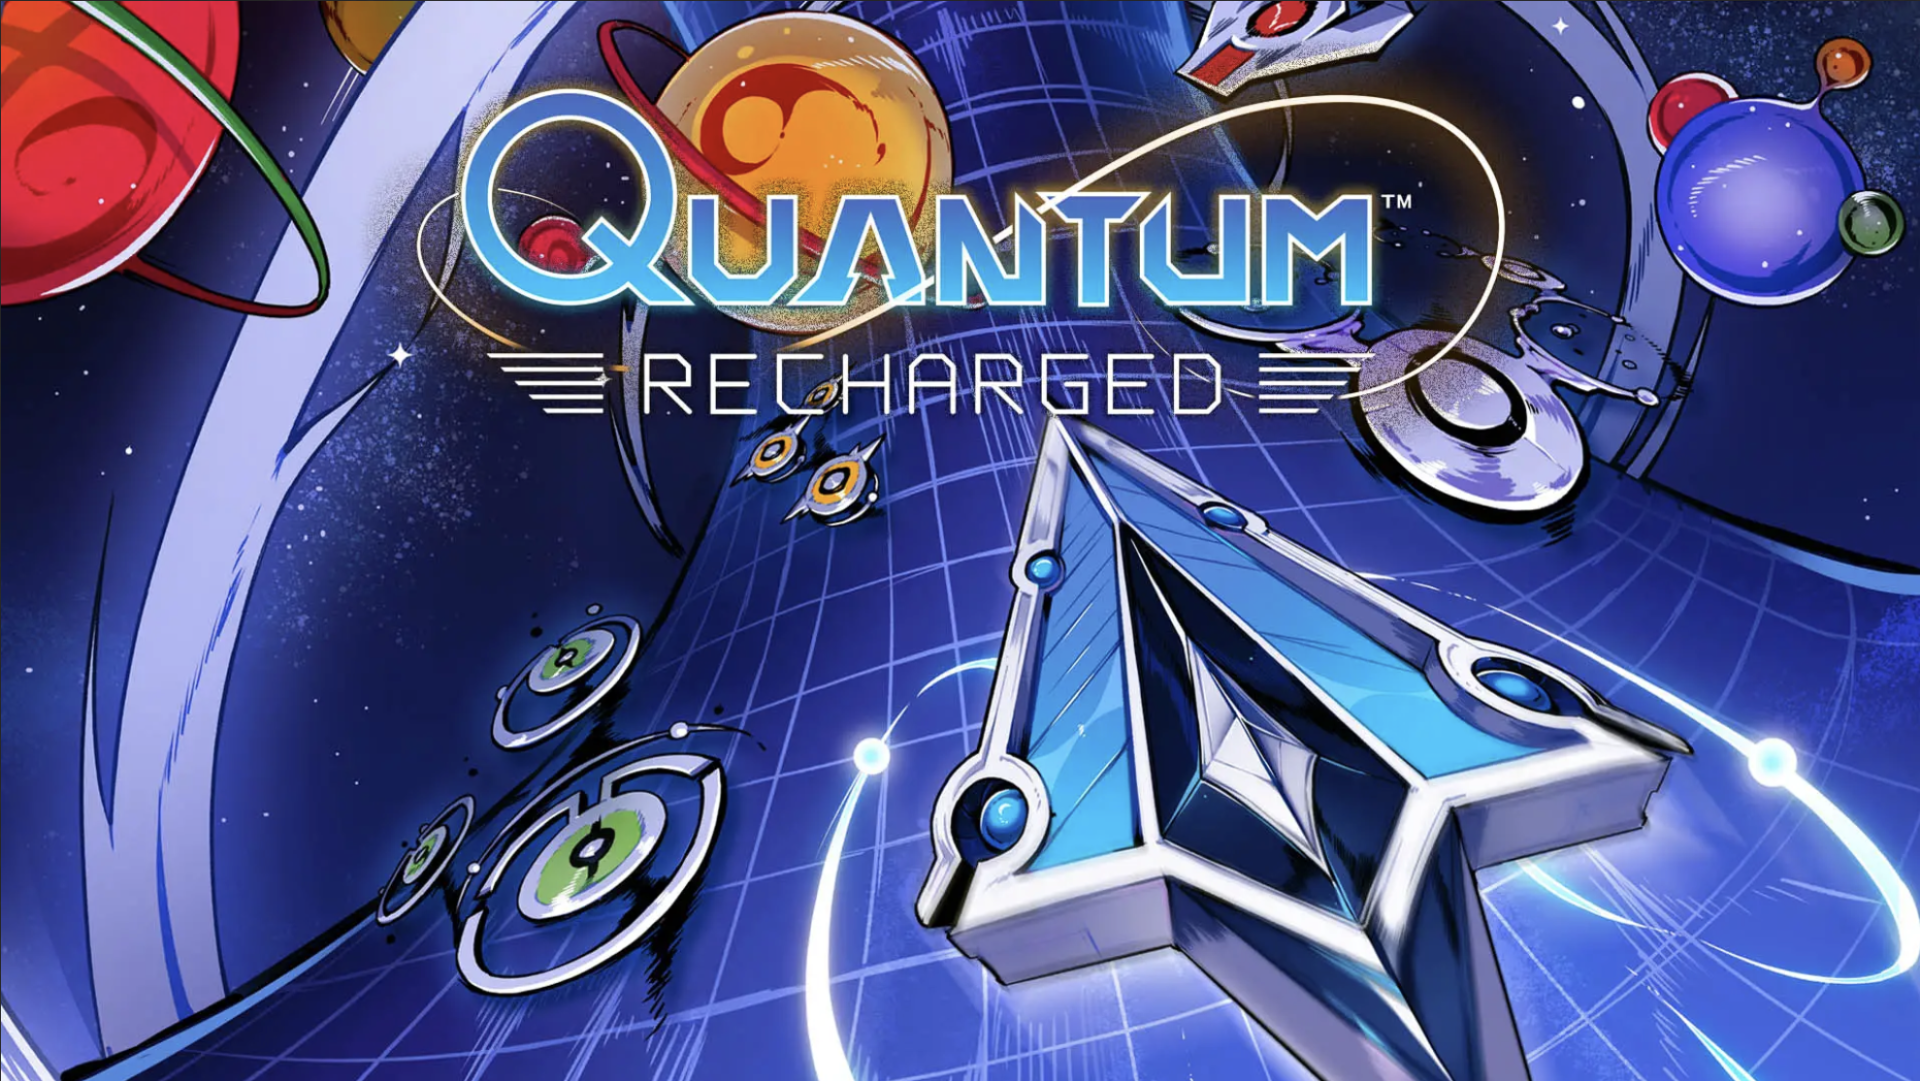 X35 Earthwalker Quantum recharged